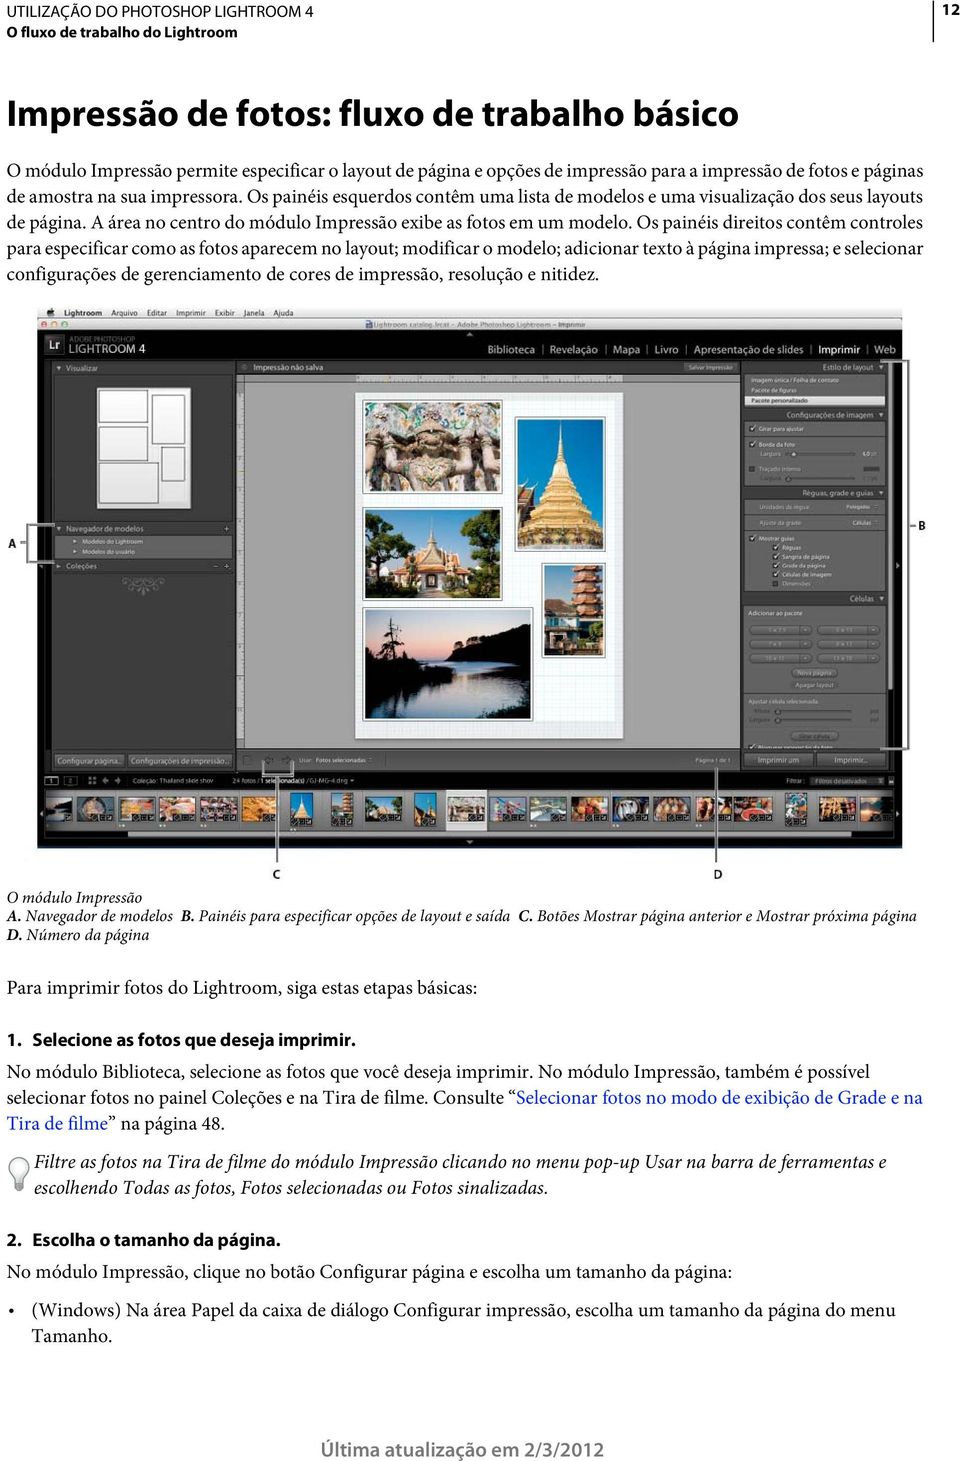 Os painéis direitos contêm controles para especificar como as fotos aparecem no layout; modificar o modelo; adicionar texto à página impressa; e selecionar configurações de gerenciamento de cores de